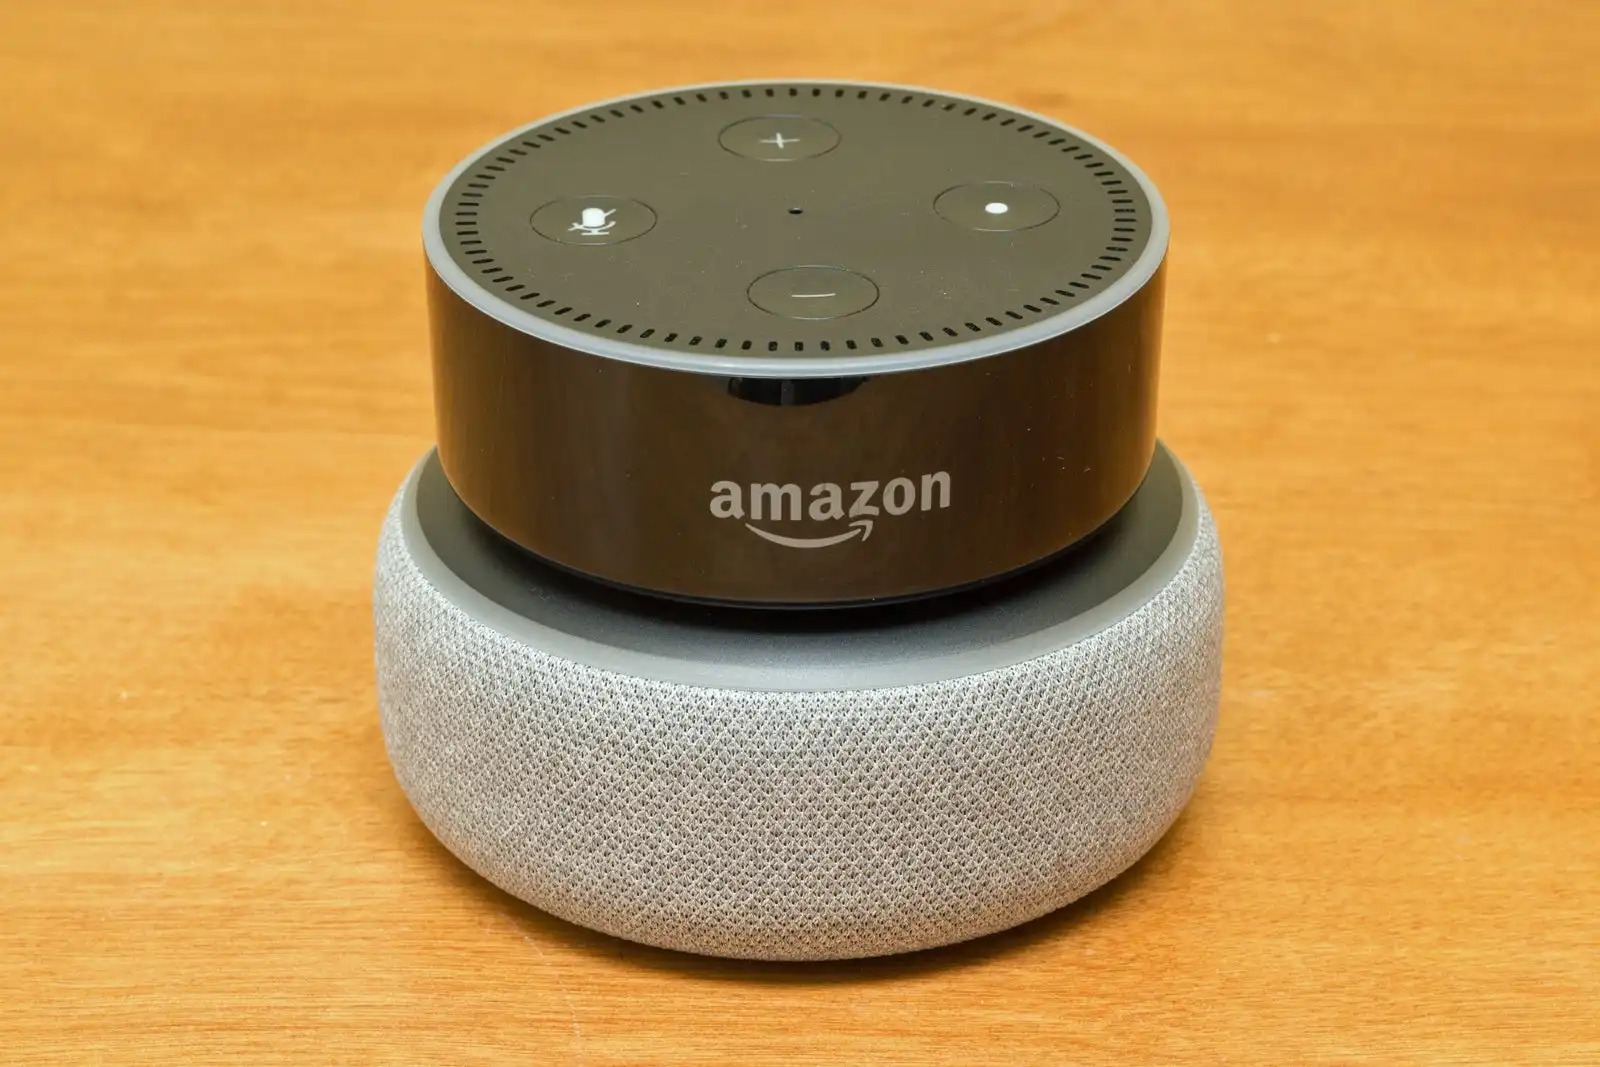 How Do You Change Amazon Echo Settings